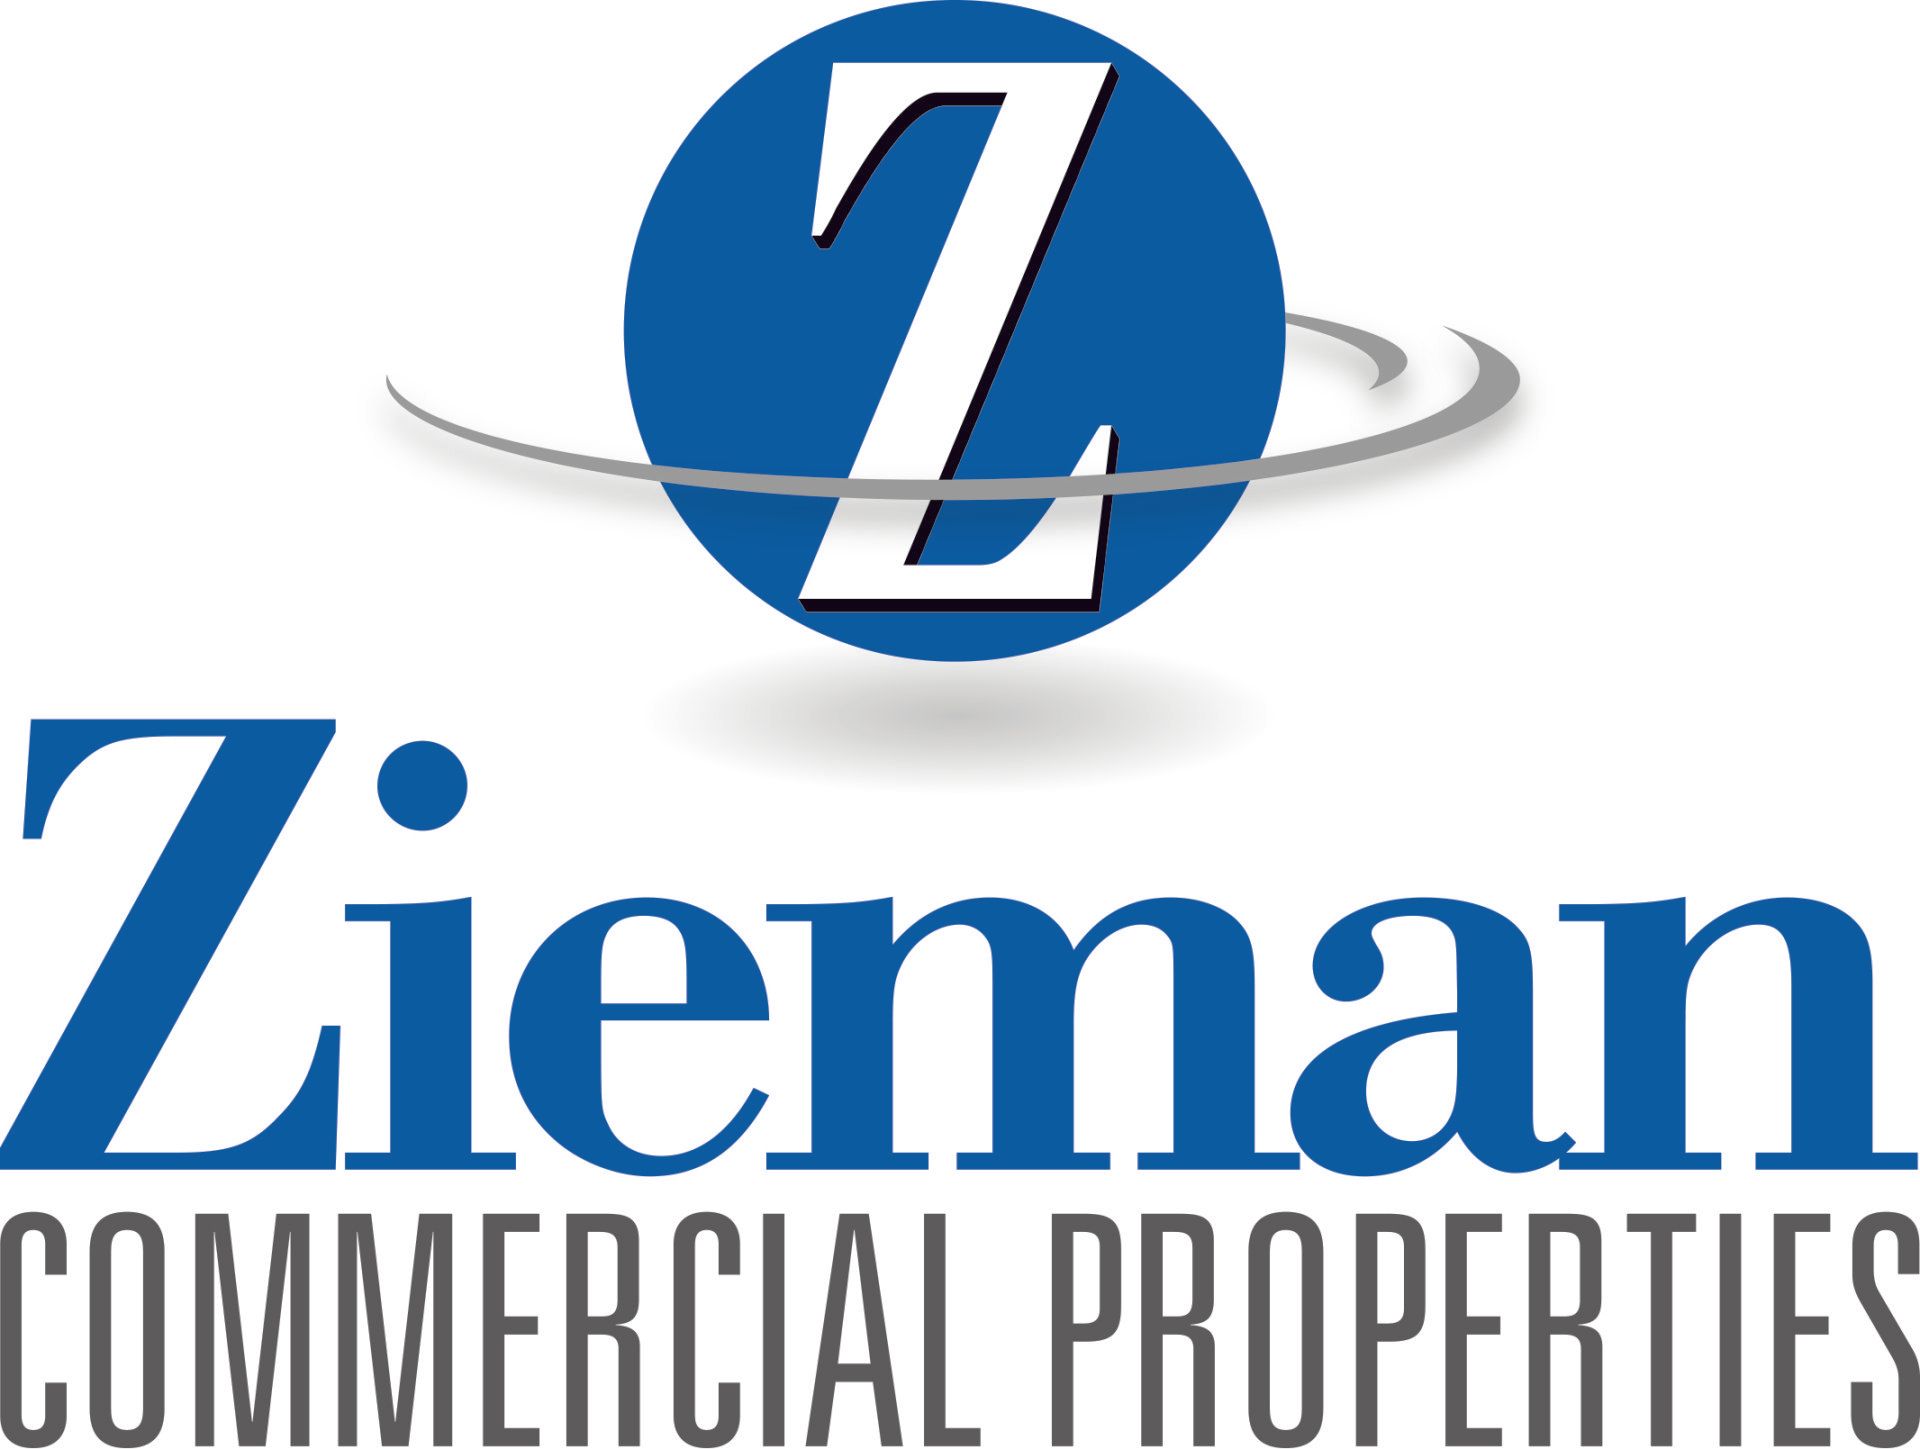 Zieman Commercial Properties, LLC - Logo